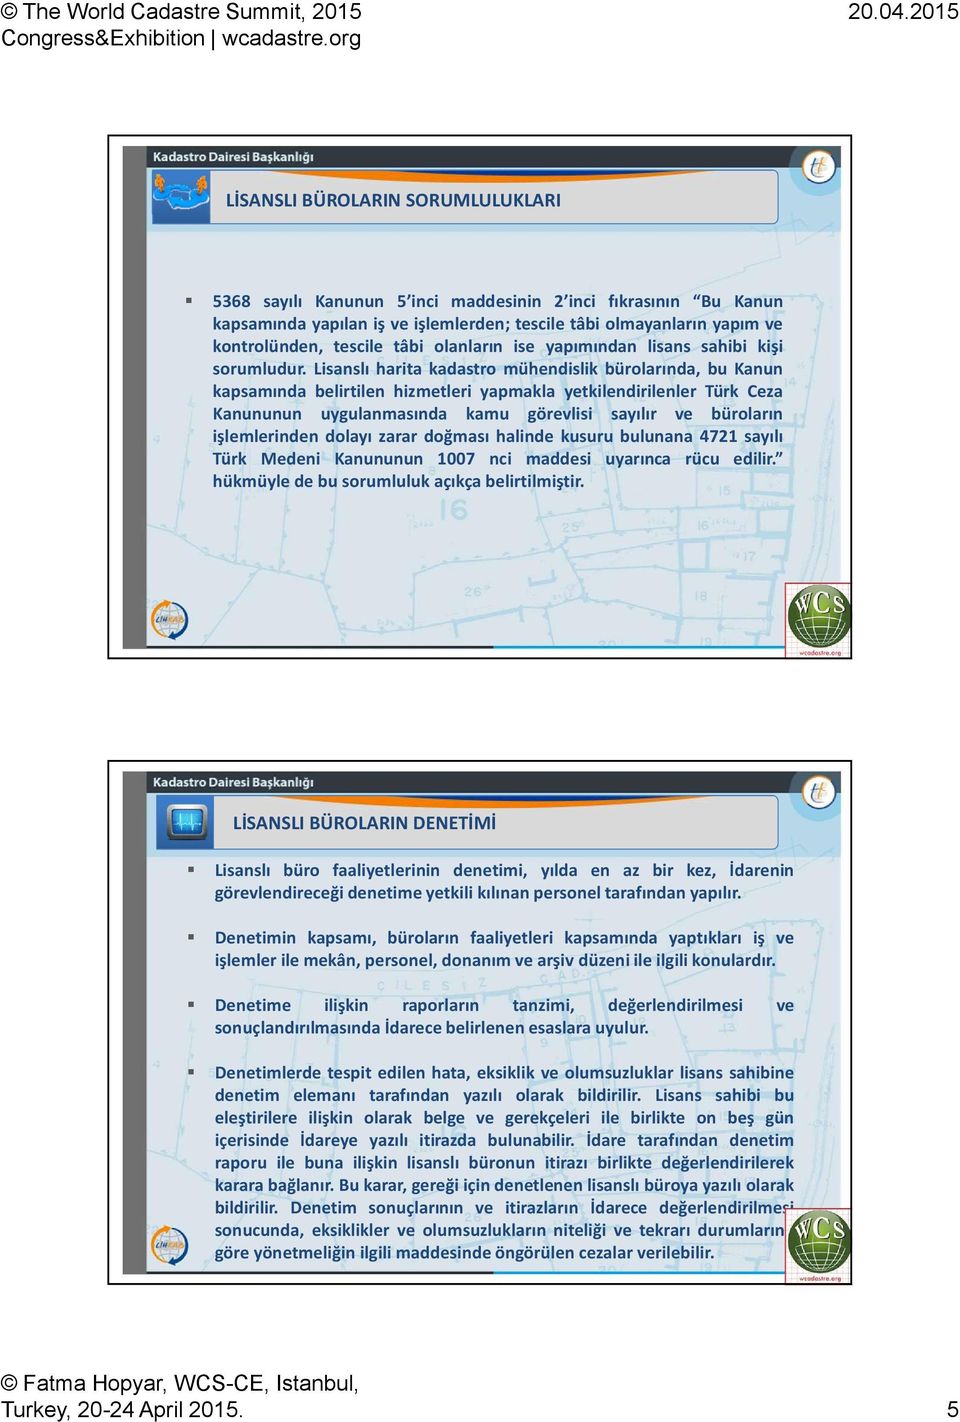 Lisanslı harita kadastro mühendislik bürolarında, bu Kanun kapsamında belirtilen hizmetleri yapmakla yetkilendirilenler Türk Ceza Kanununun uygulanmasında kamu görevlisi sayılır ve büroların